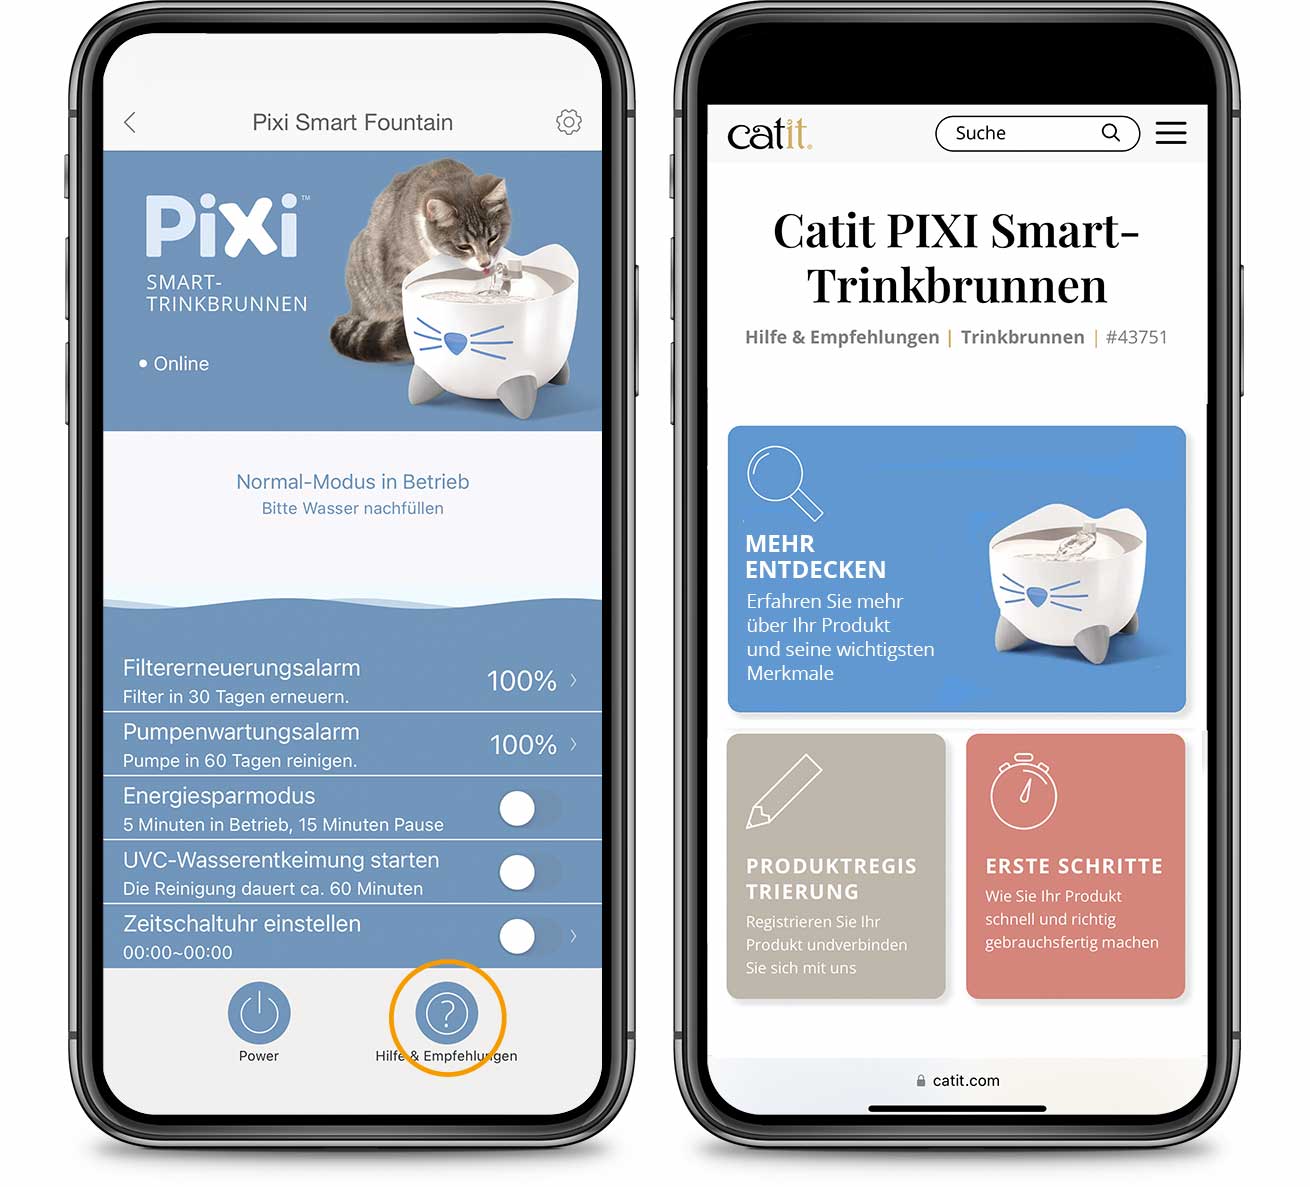 PIXI App – Hilfe & Empfehlungen